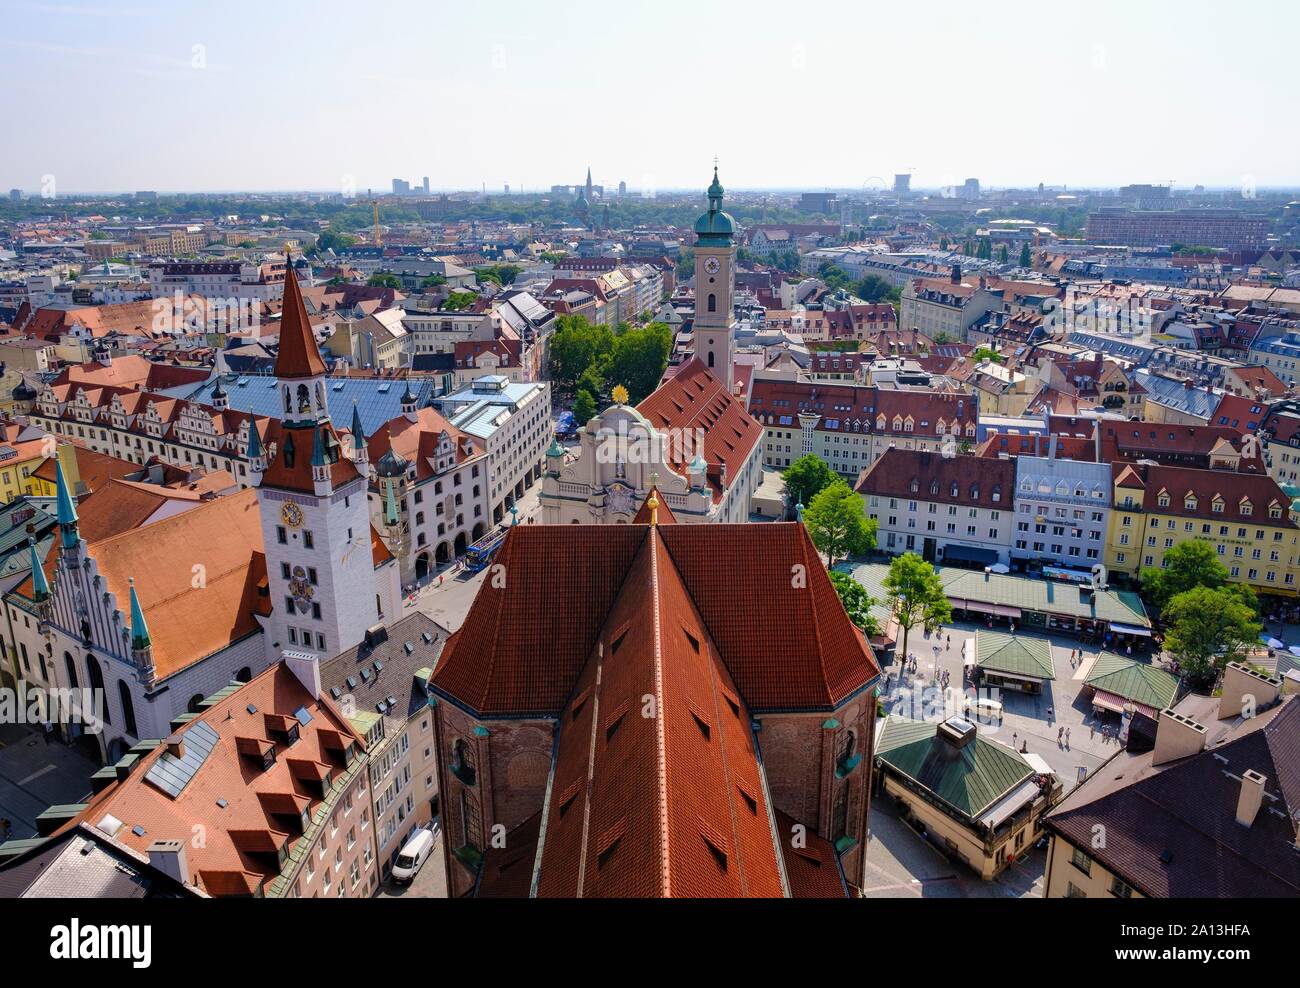 Blick auf die Altstadt, das Dach von St. Peter's Kirche, Altes Rathaus und Kirche des Heiligen Geistes, München, Oberbayern, Bayern, Deutschland Stockfoto